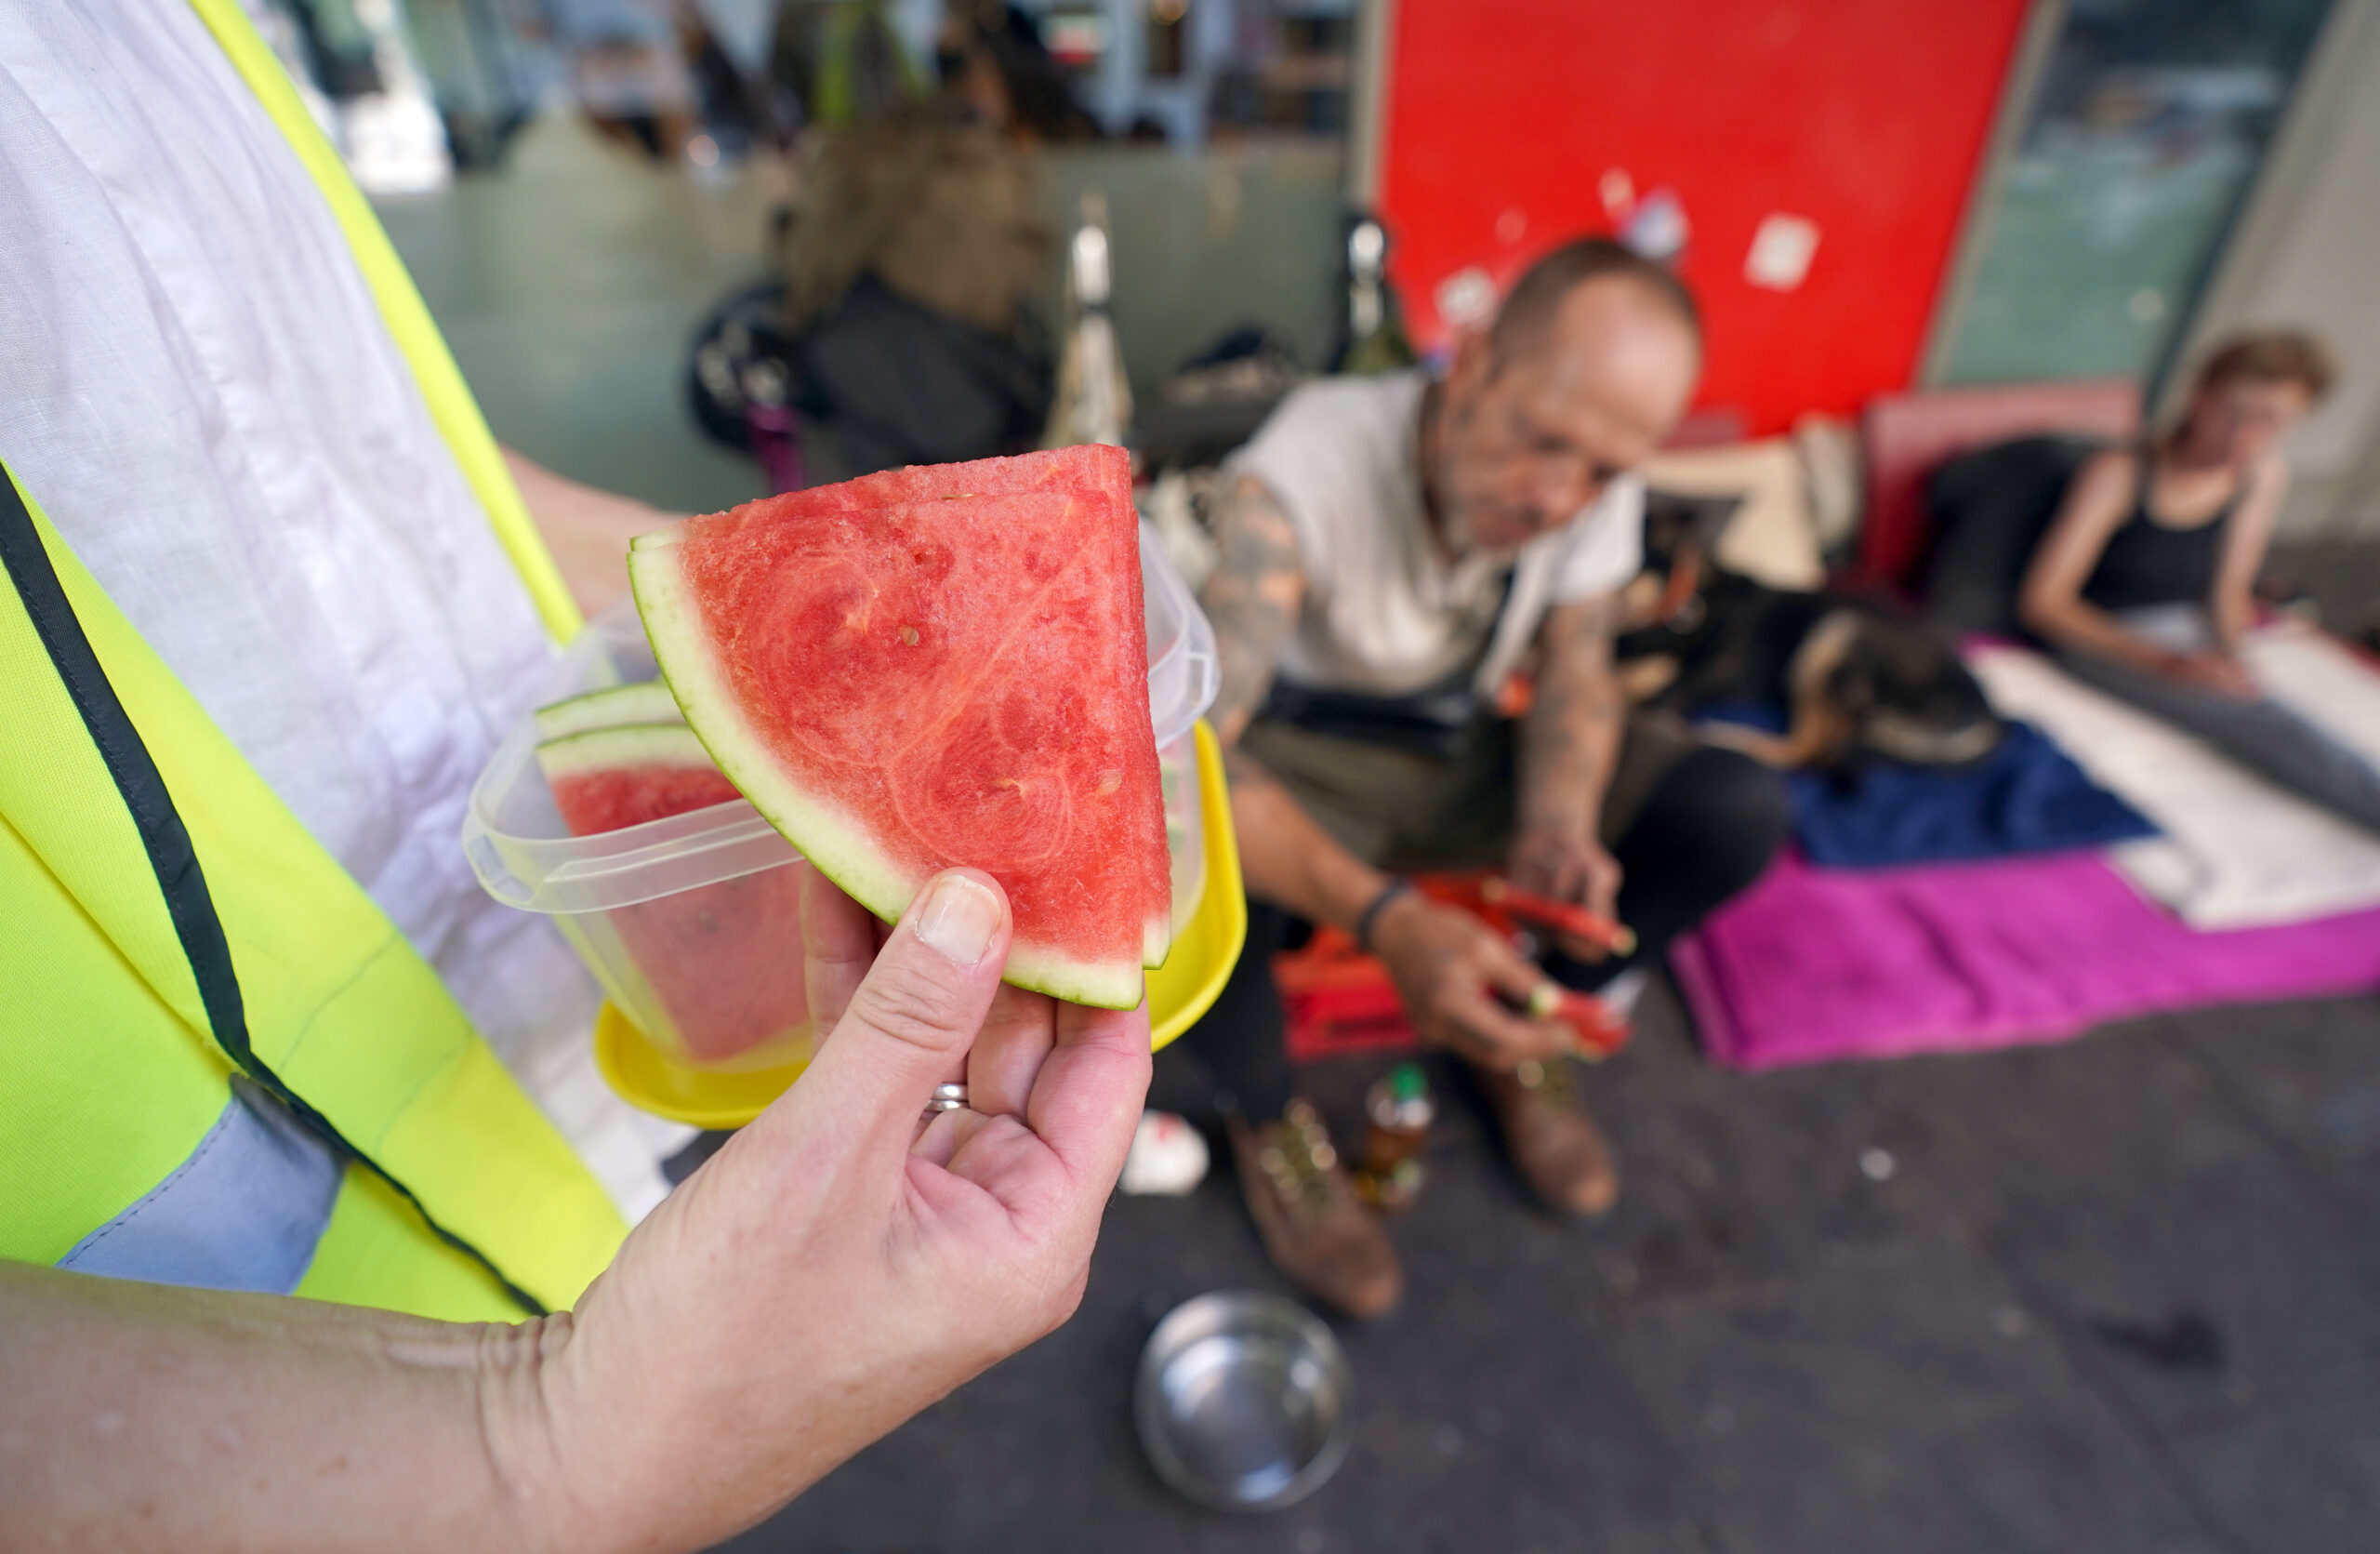 Wassermelonen-Stücke werden an Obdachlose verteilt.